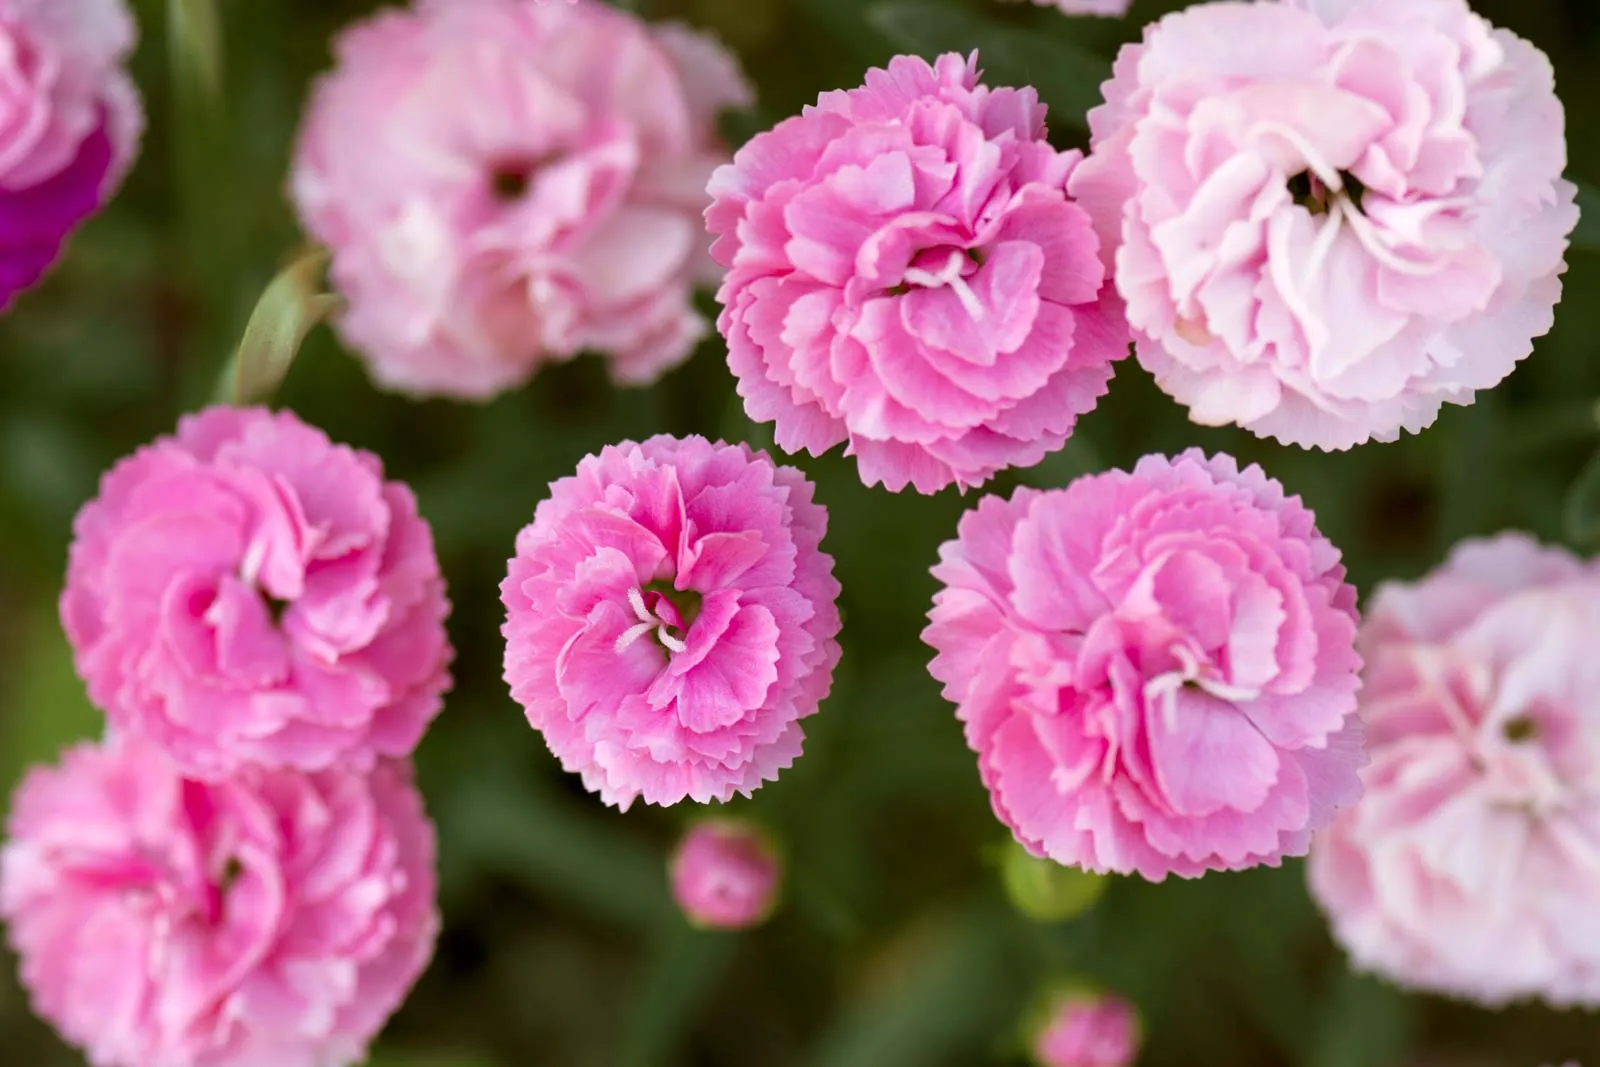  của 12 Nhân Mã: Hoa cẩm chướng Hoa cẩm chướng hồng giữa lá và nụ nhìn từ trên cao  Cây vân sam / Evgeniya Vlasova Là cung lửa do Sao Mộc cai trị, Nhân Mã phát triển mạnh nhờ những loại cây táo bạo, rực rỡ, tạo nên sự nổi bật, khiến hoa cẩm chướng trở thành sự lựa chọn tuyệt vời cho khu vườn của họ.  Hoa cẩm chướng thường được trồng để làm hoa cắt cành và mùi đinh hương cay nồng của chúng tương đương với dấu hiệu lửa du hành. Chúng đòi hỏi sự chăm sóc có chủ ý dưới hình thức những bông hoa nở rộ , nhưng sự hiện diện nổi bật của chúng là hoàn hảo đối với Nhân Mã lạc quan.